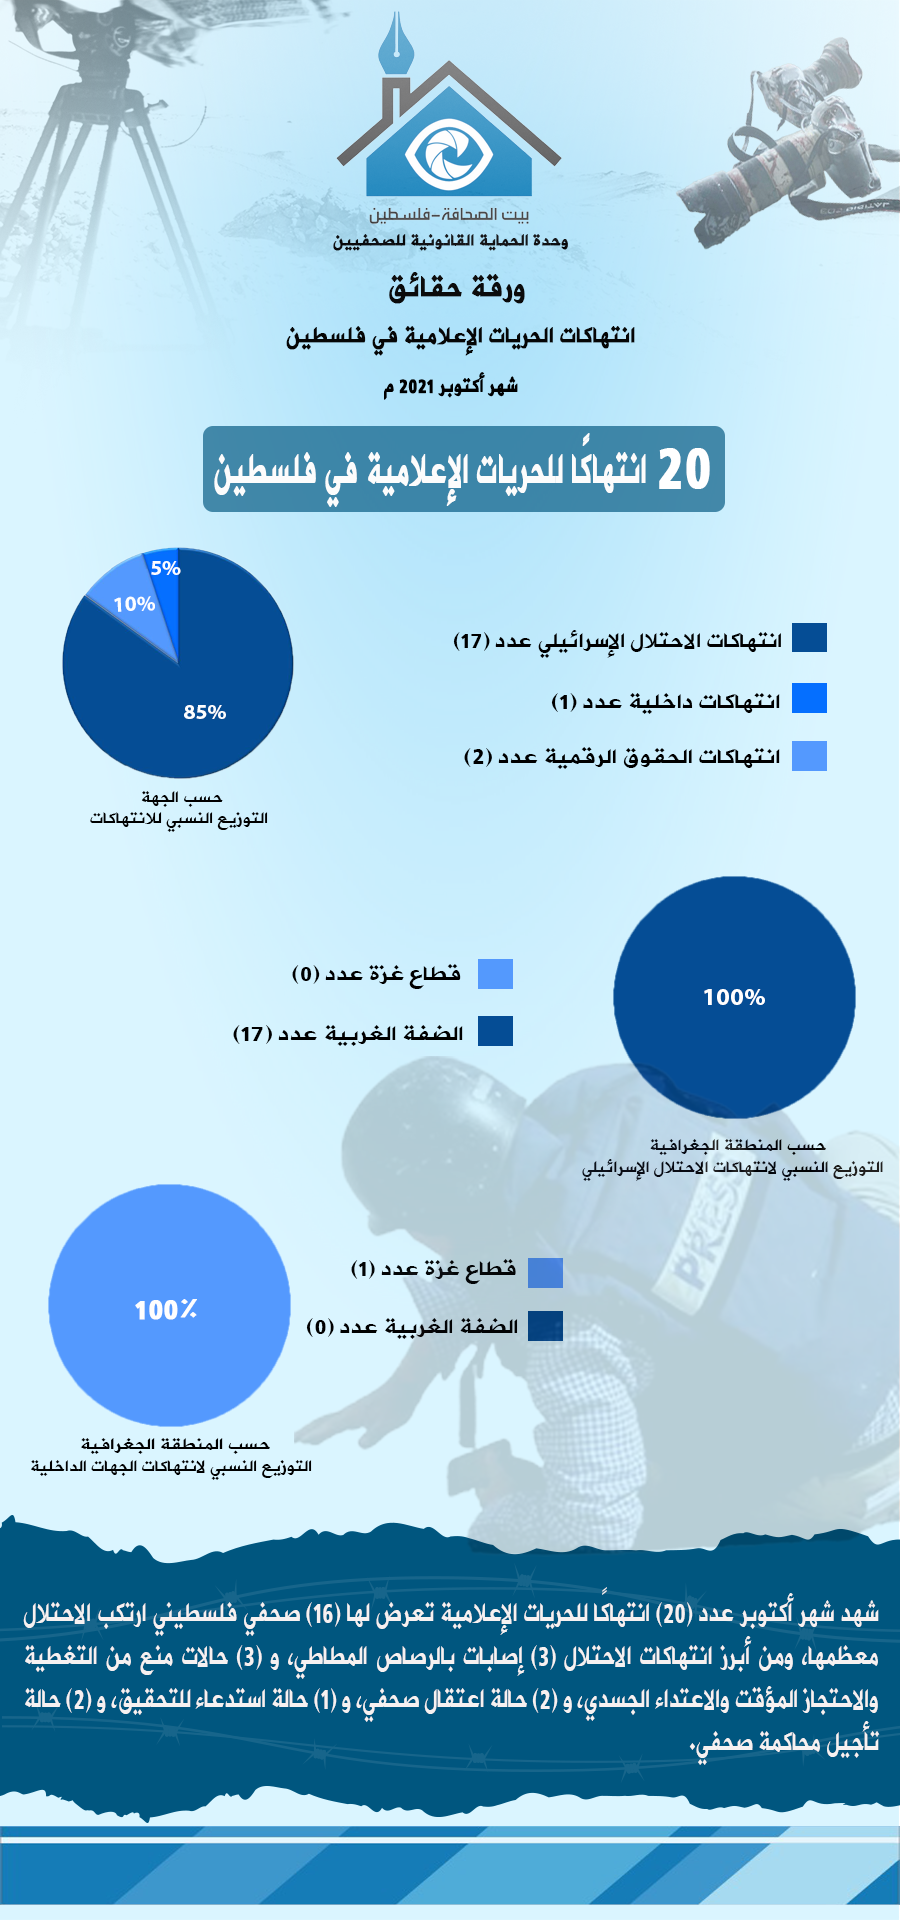 ورقة حقائق شهر 10 أكتوبر 2021 - عربي.png